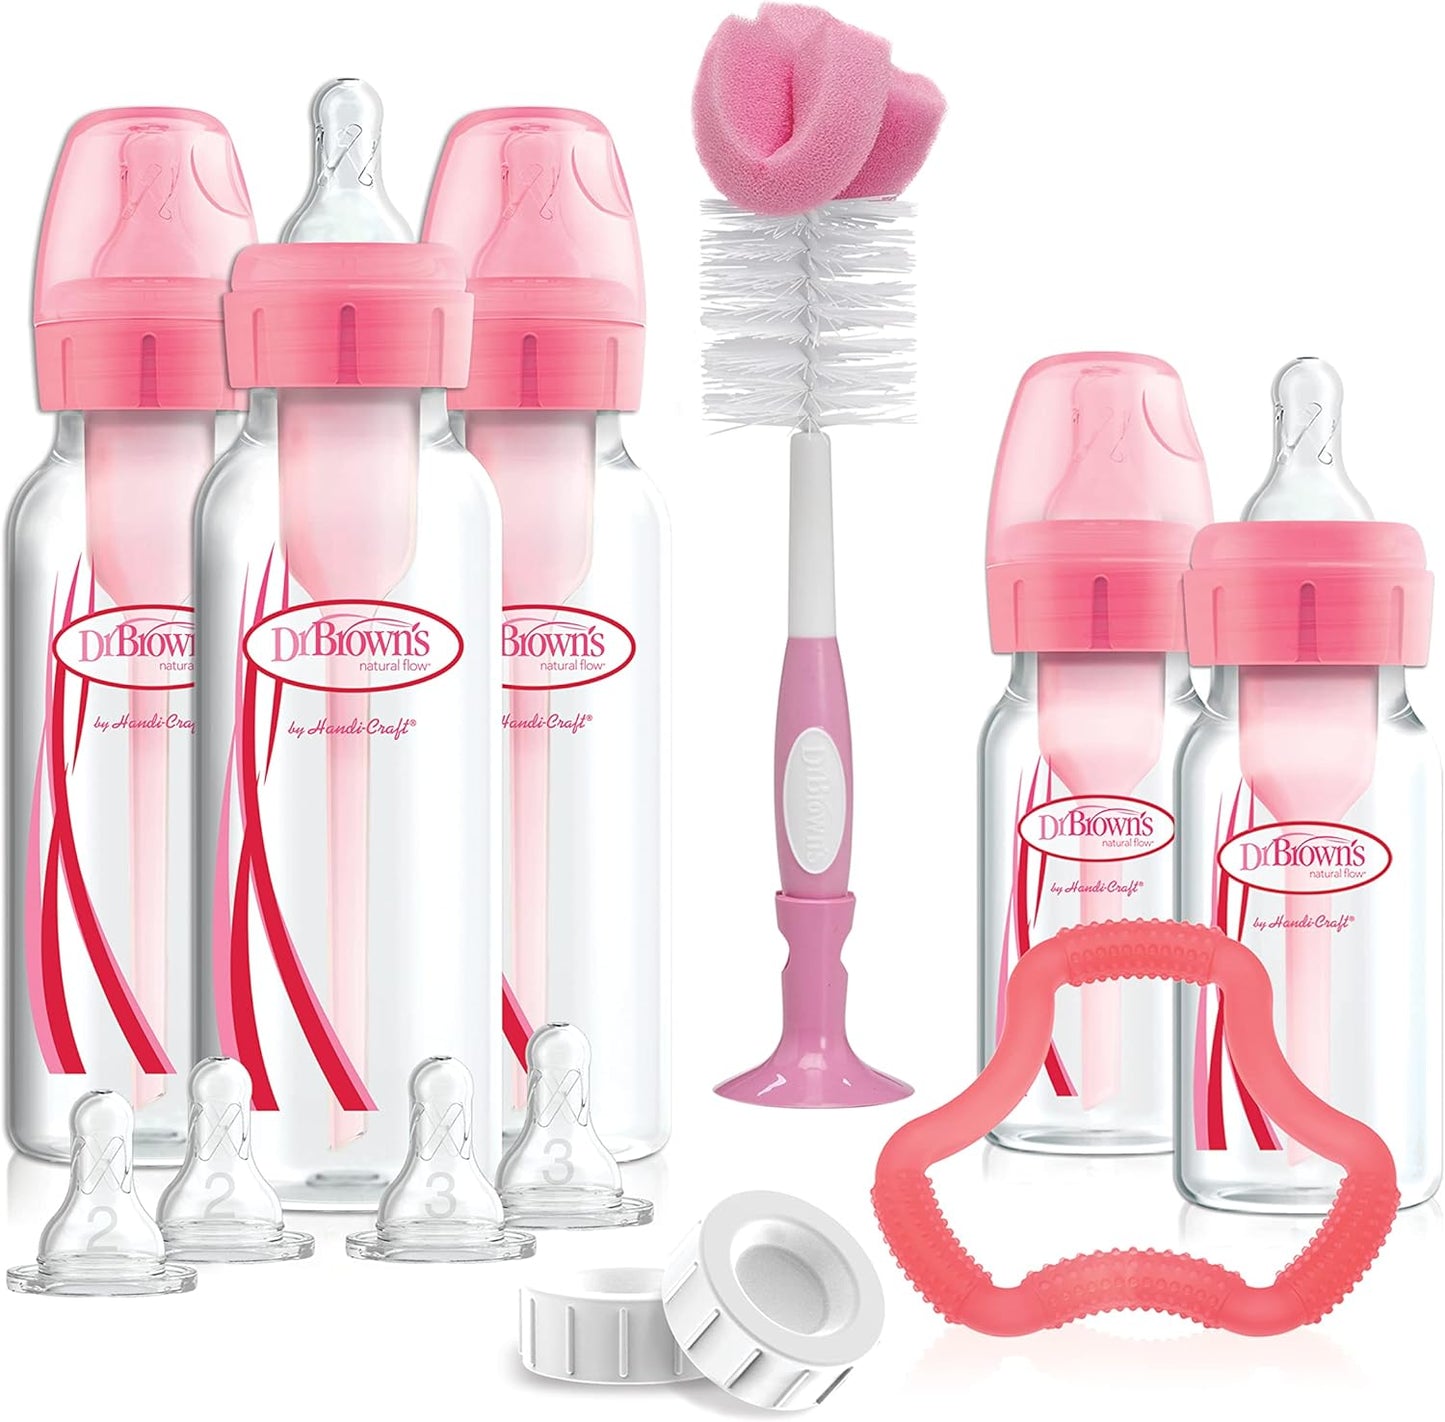 Dr. Brown's Pink Bottle Gift Set Options